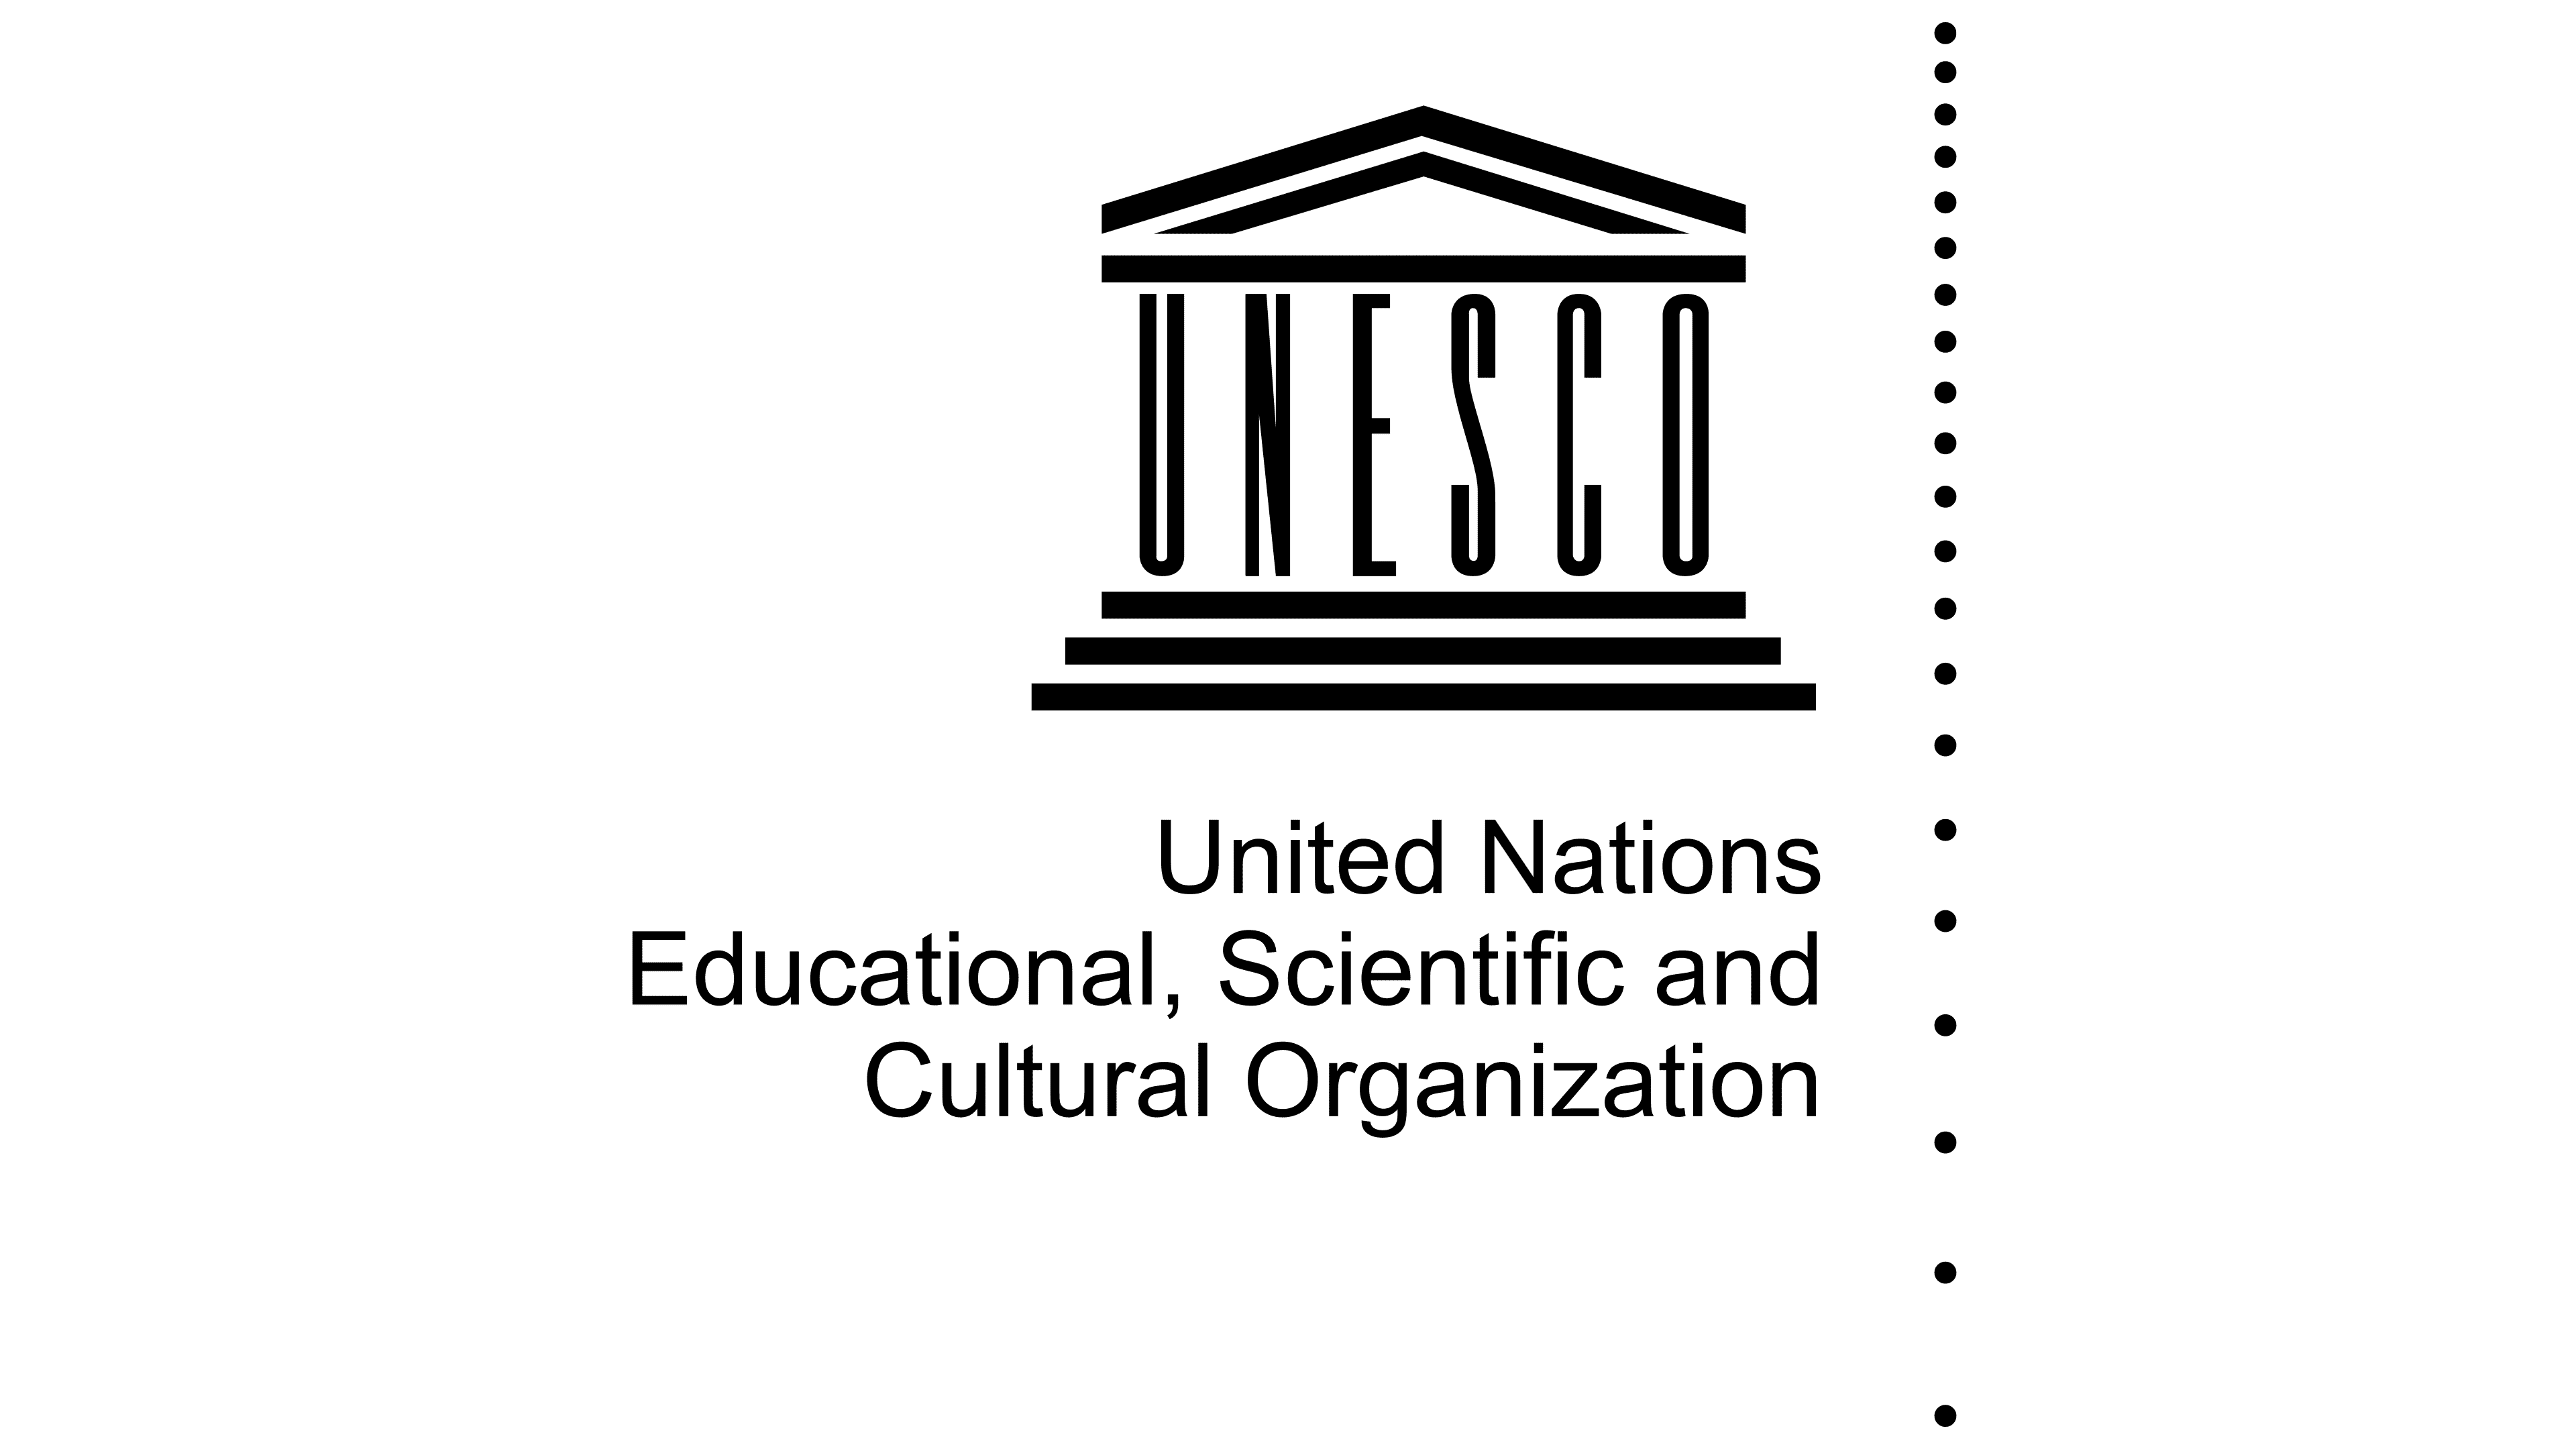 ЮНЕСКО. ЮНЕСКО эмблема. Документы ЮНЕСКО. Символ ЮНЕСКО. Whc unesco